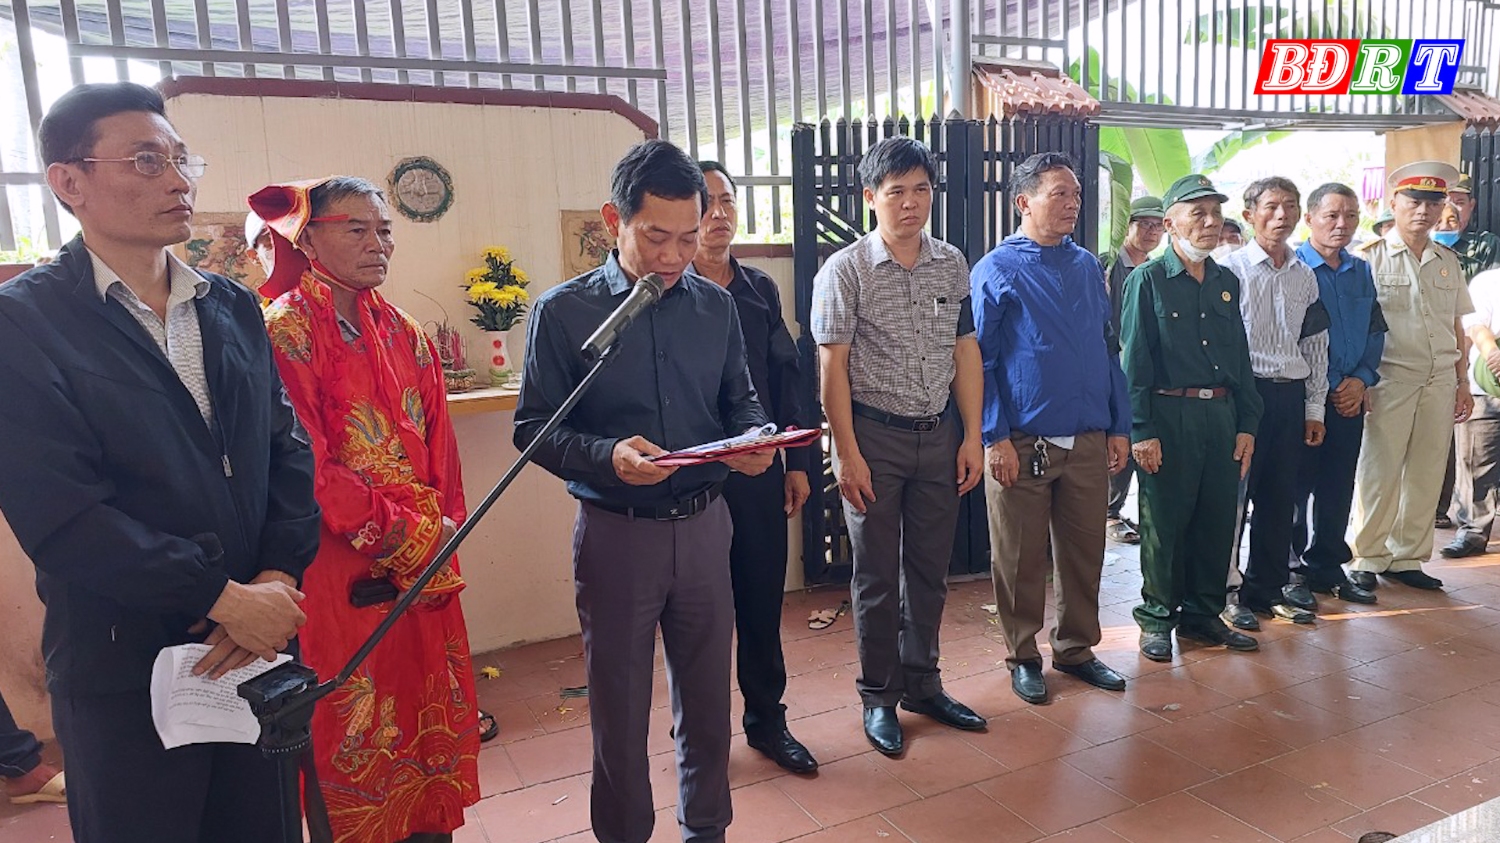 Đồng chí Nguyễn Văn Tình PCT UBND thị xã đọc điếu văn tiễn đưa đồng chí Trần Vĩnh Tín (1)